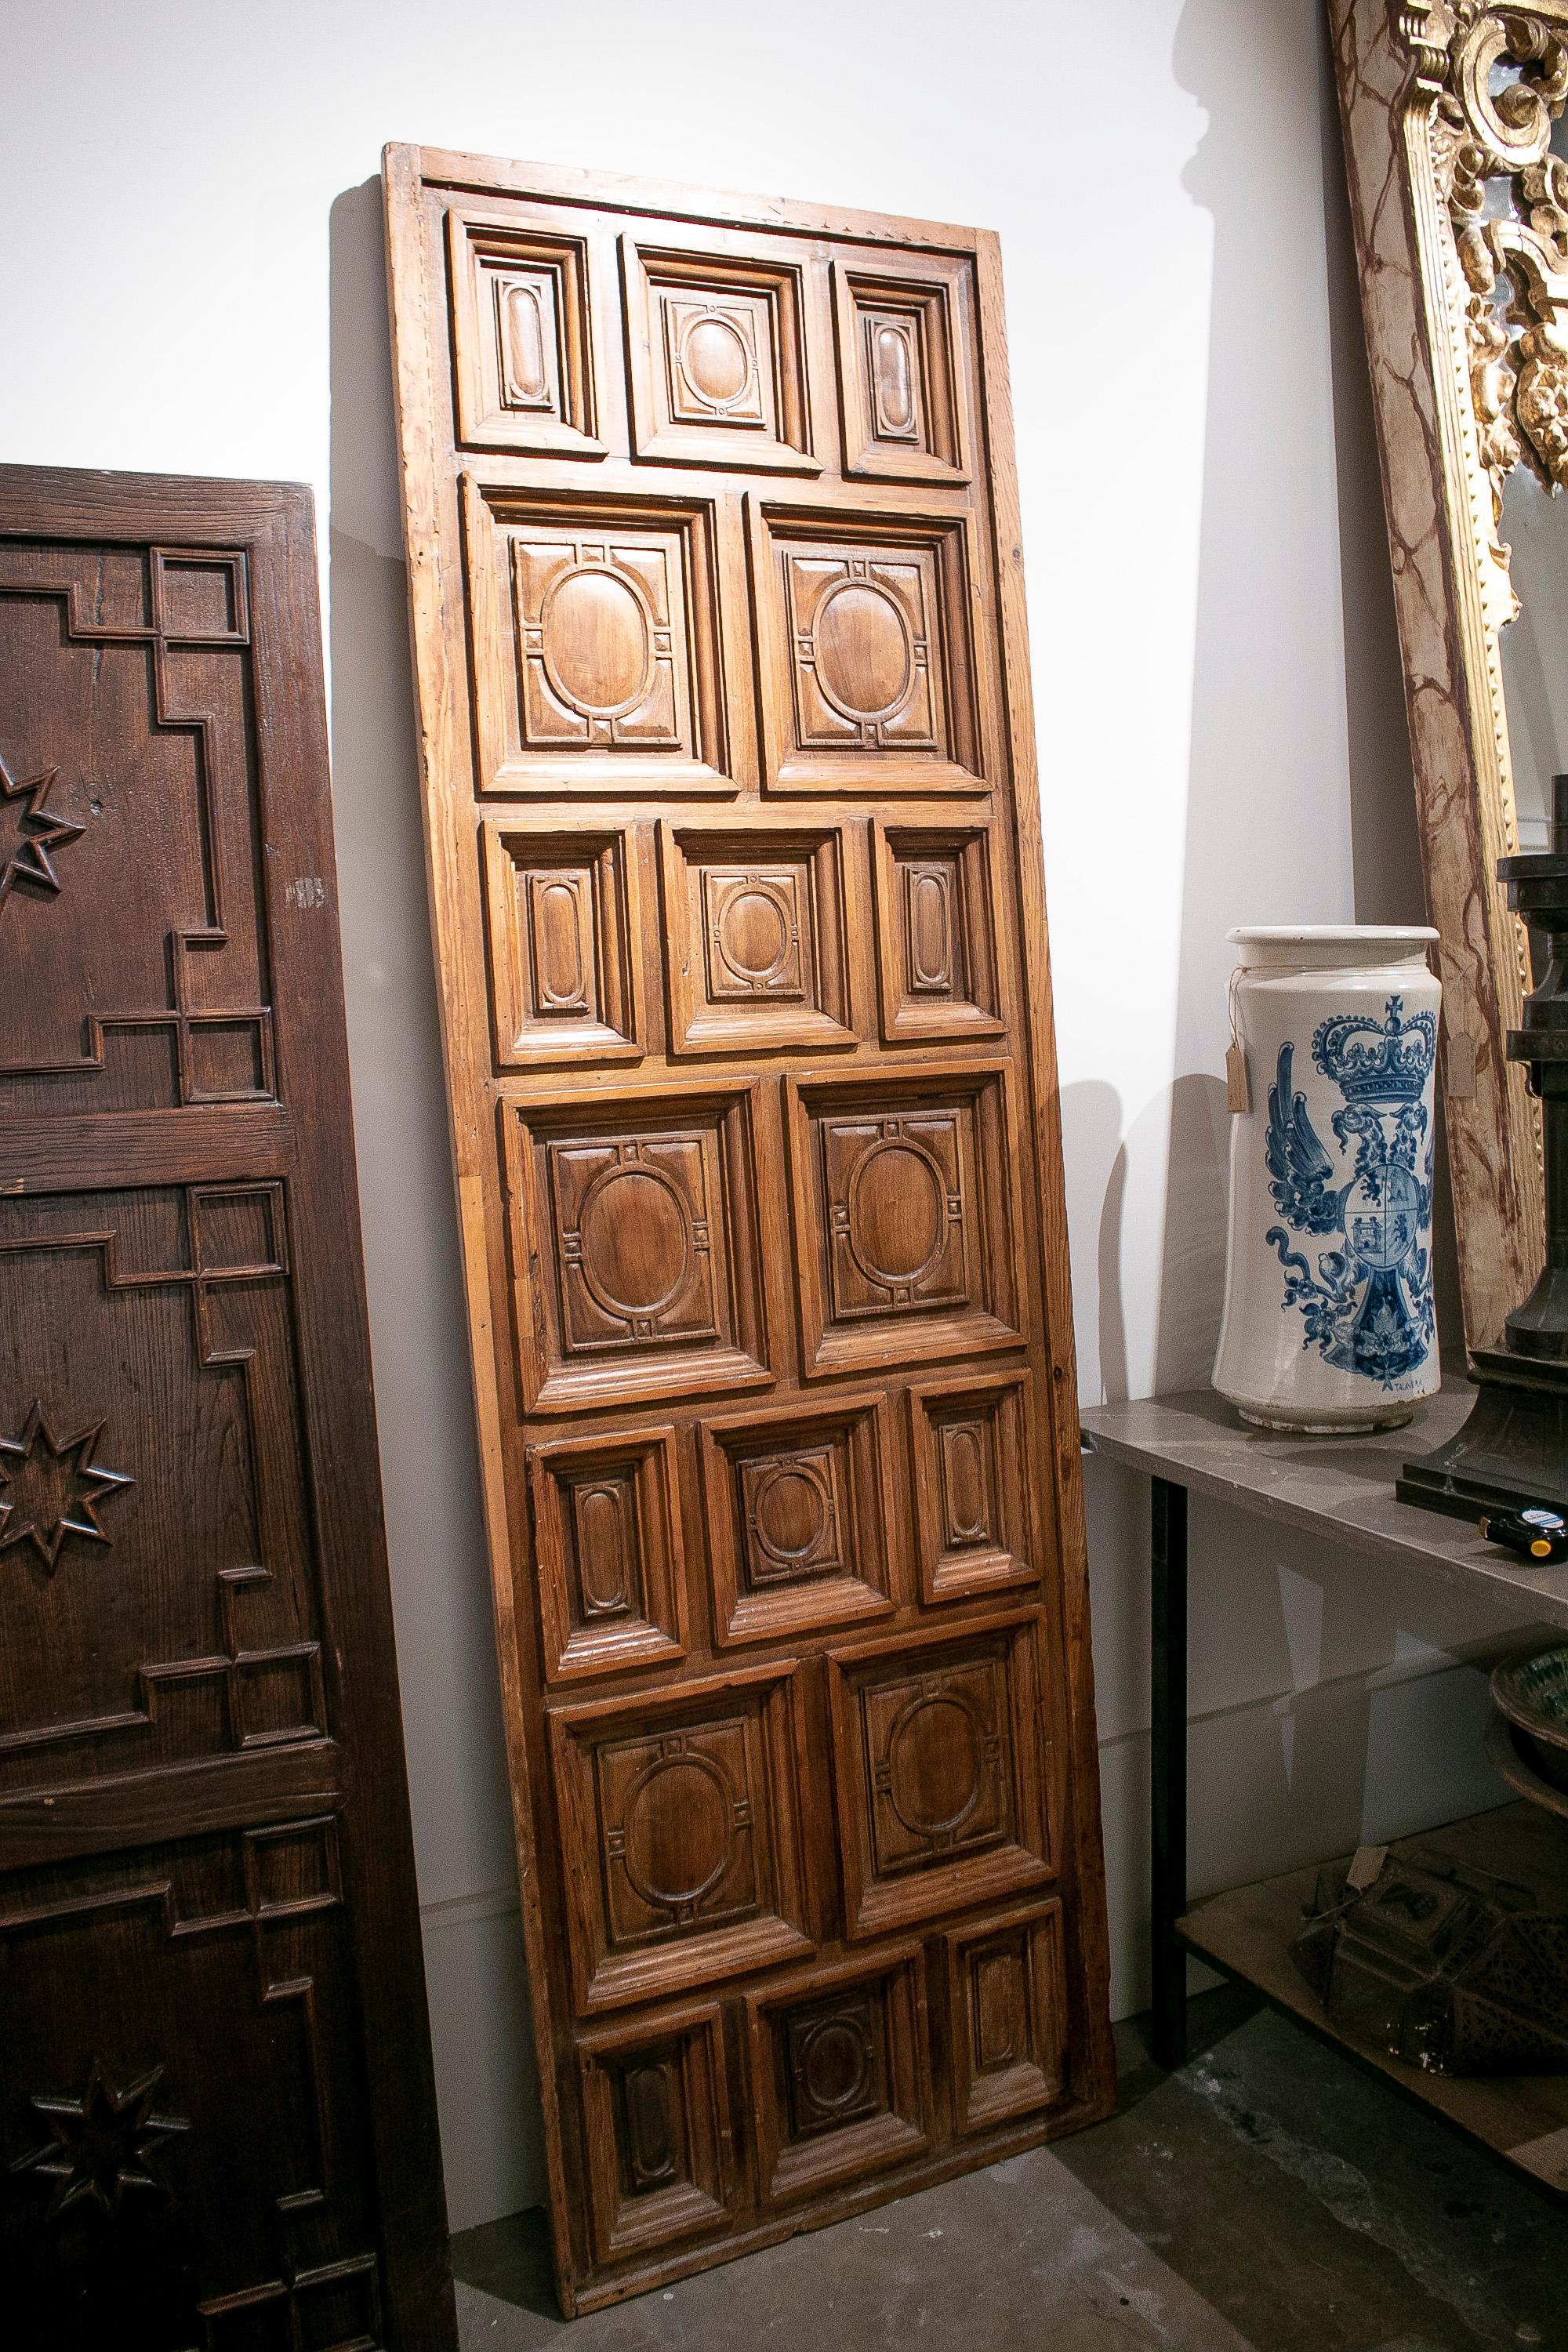 Ancien panneau de porte en bois géométrique sculpté à la main, datant du 17e siècle, originaire d'Espagne.